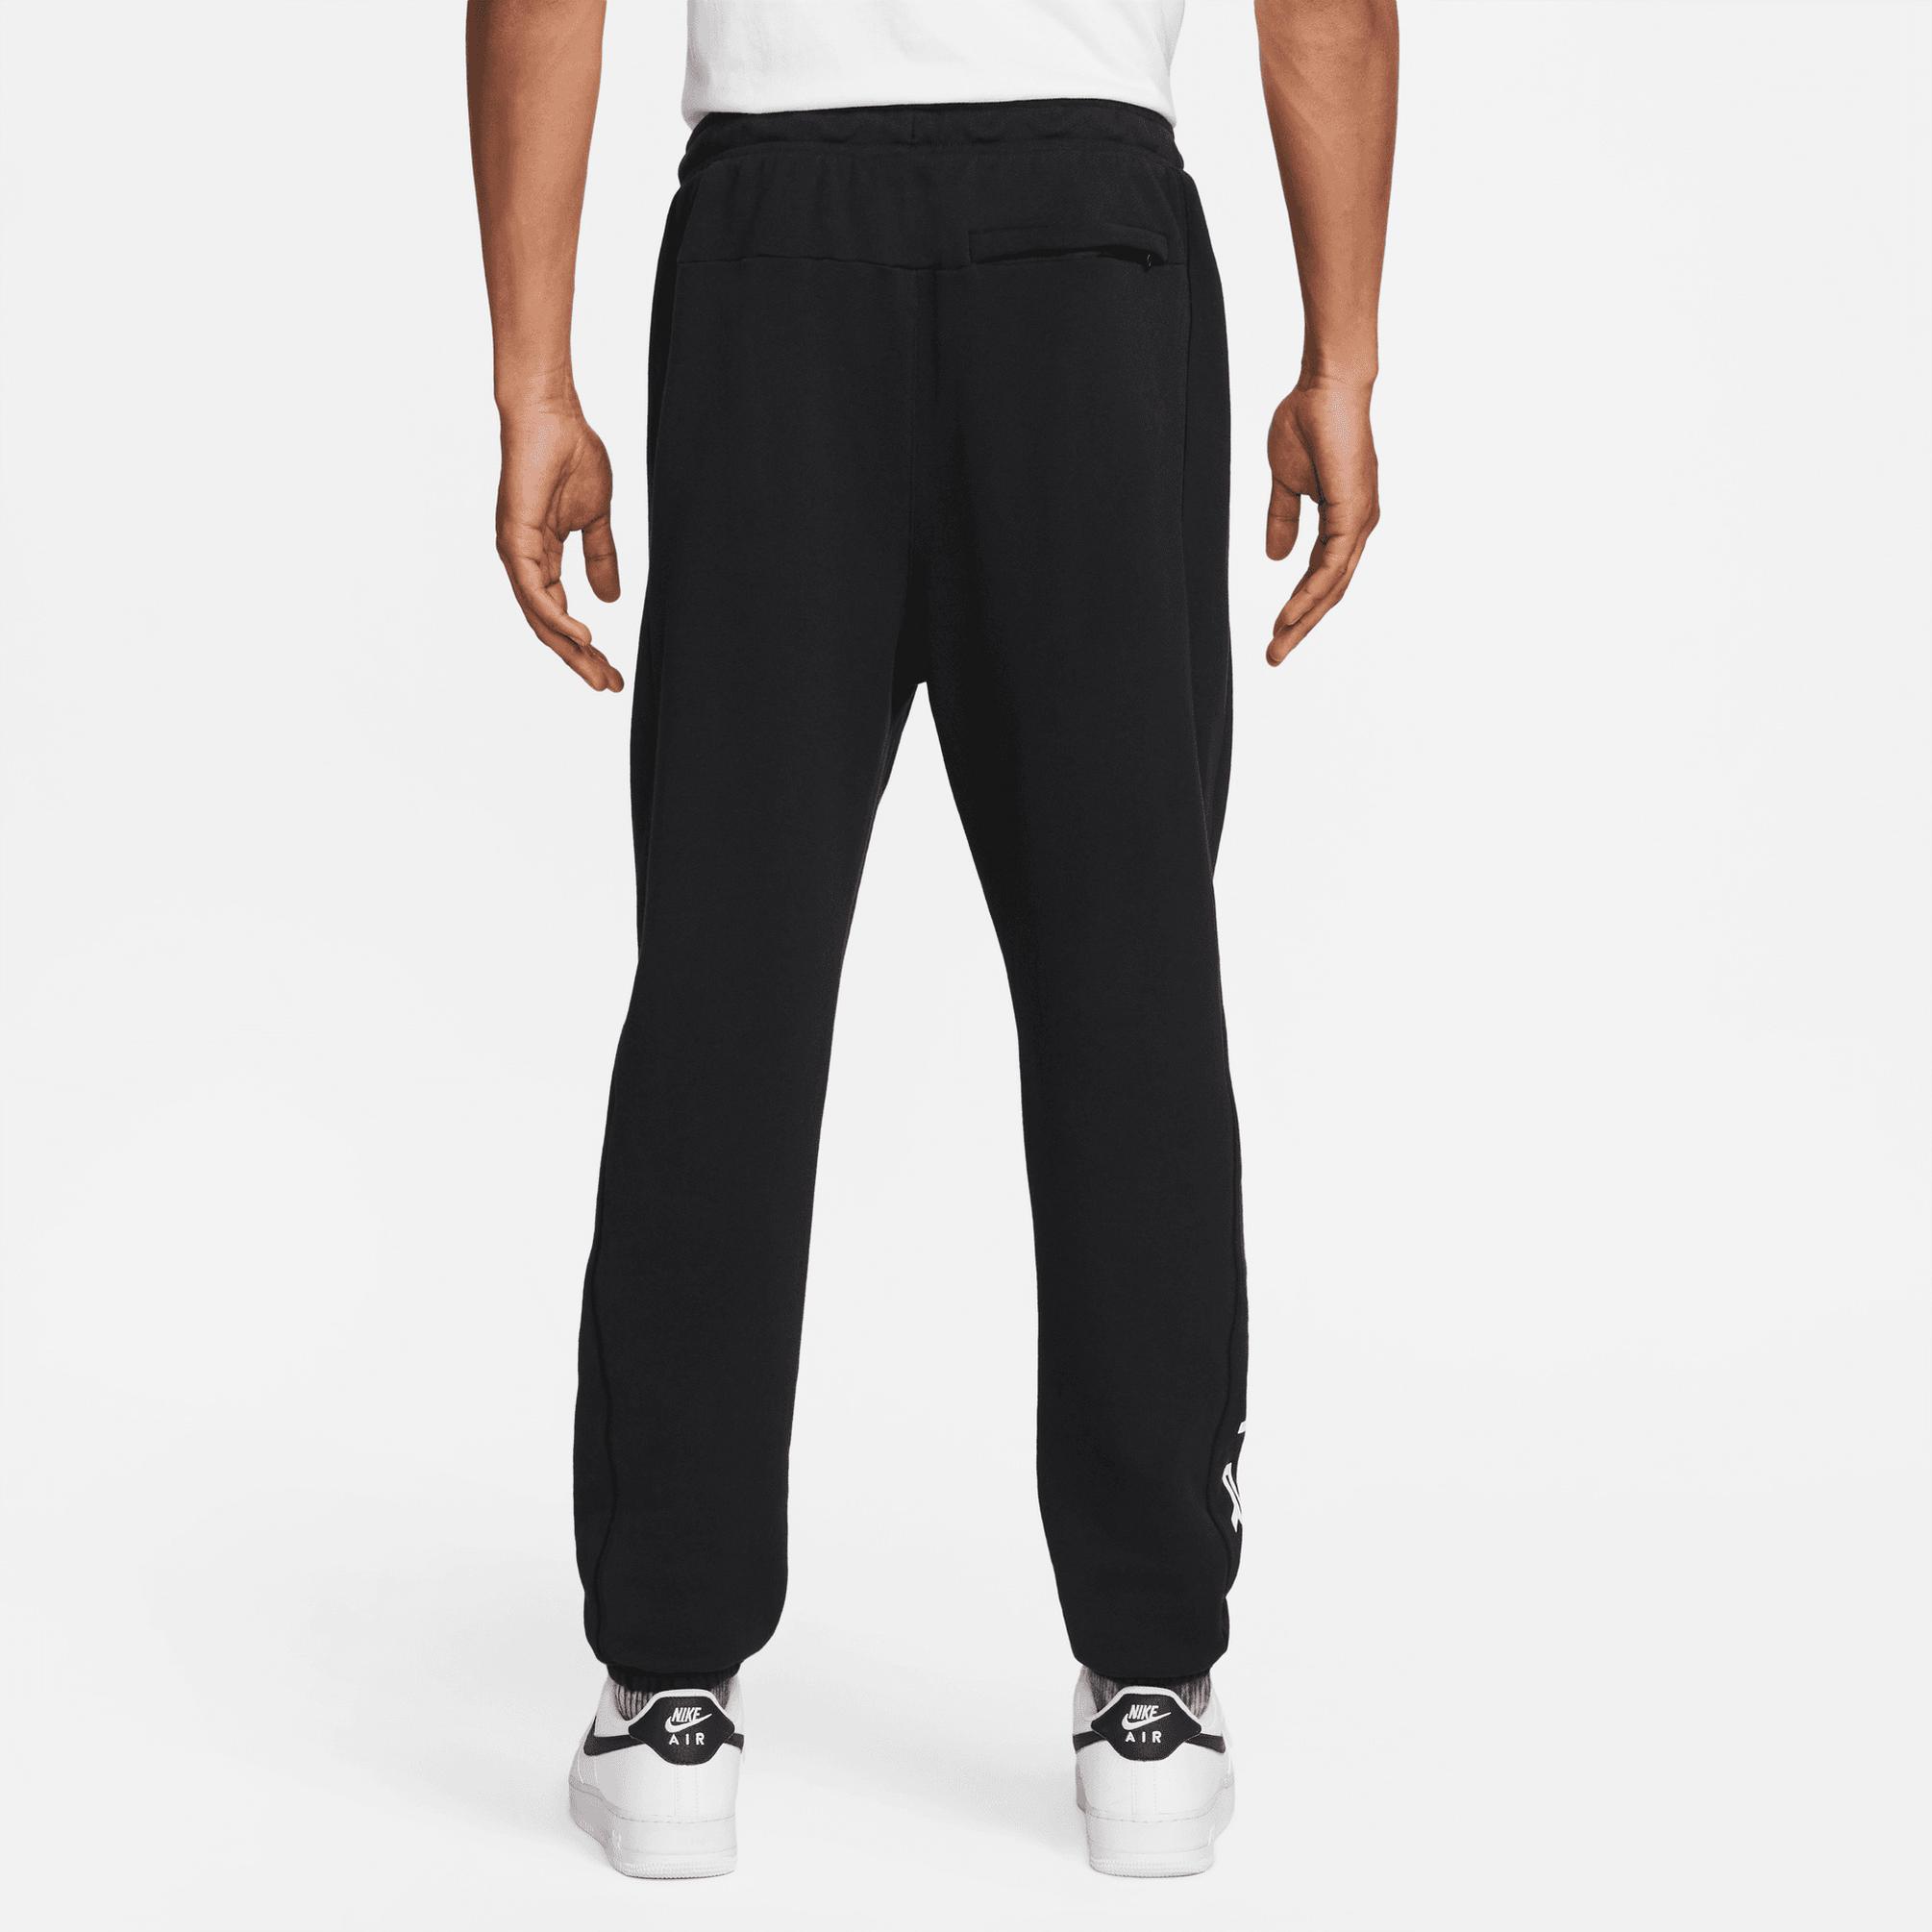  Nike Sportswear Air Erkek Siyah Eşofman Altı